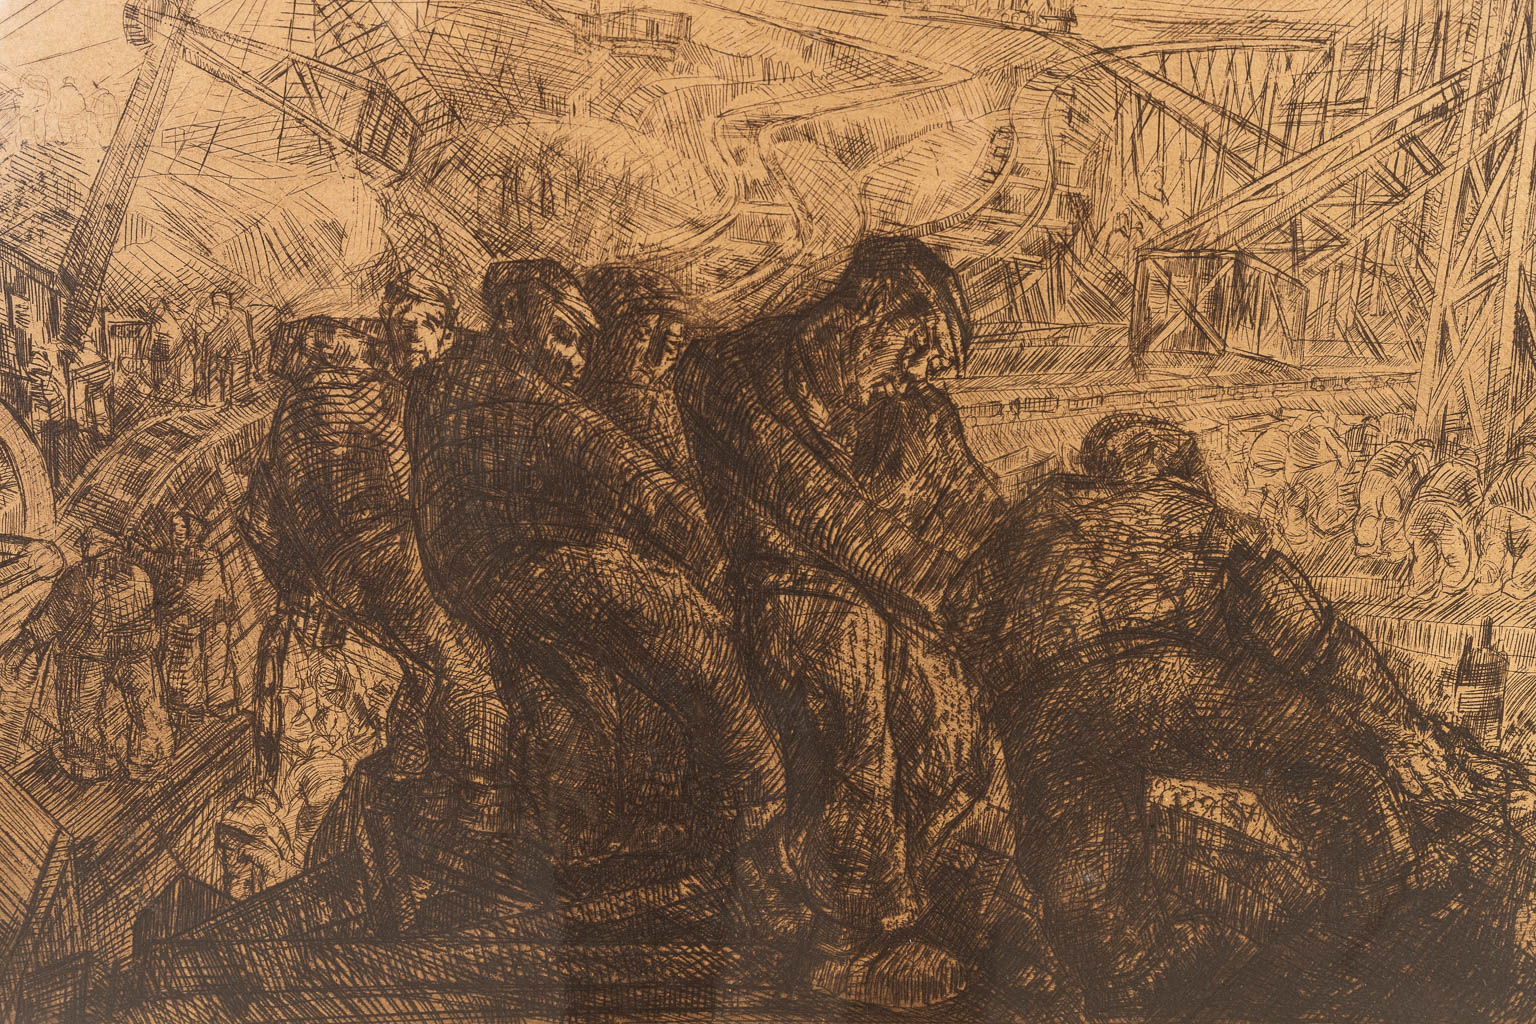 Jacques BOONEN (1911-1968) 'Graafwerken' an etching, 1933. (65 x 53 cm)